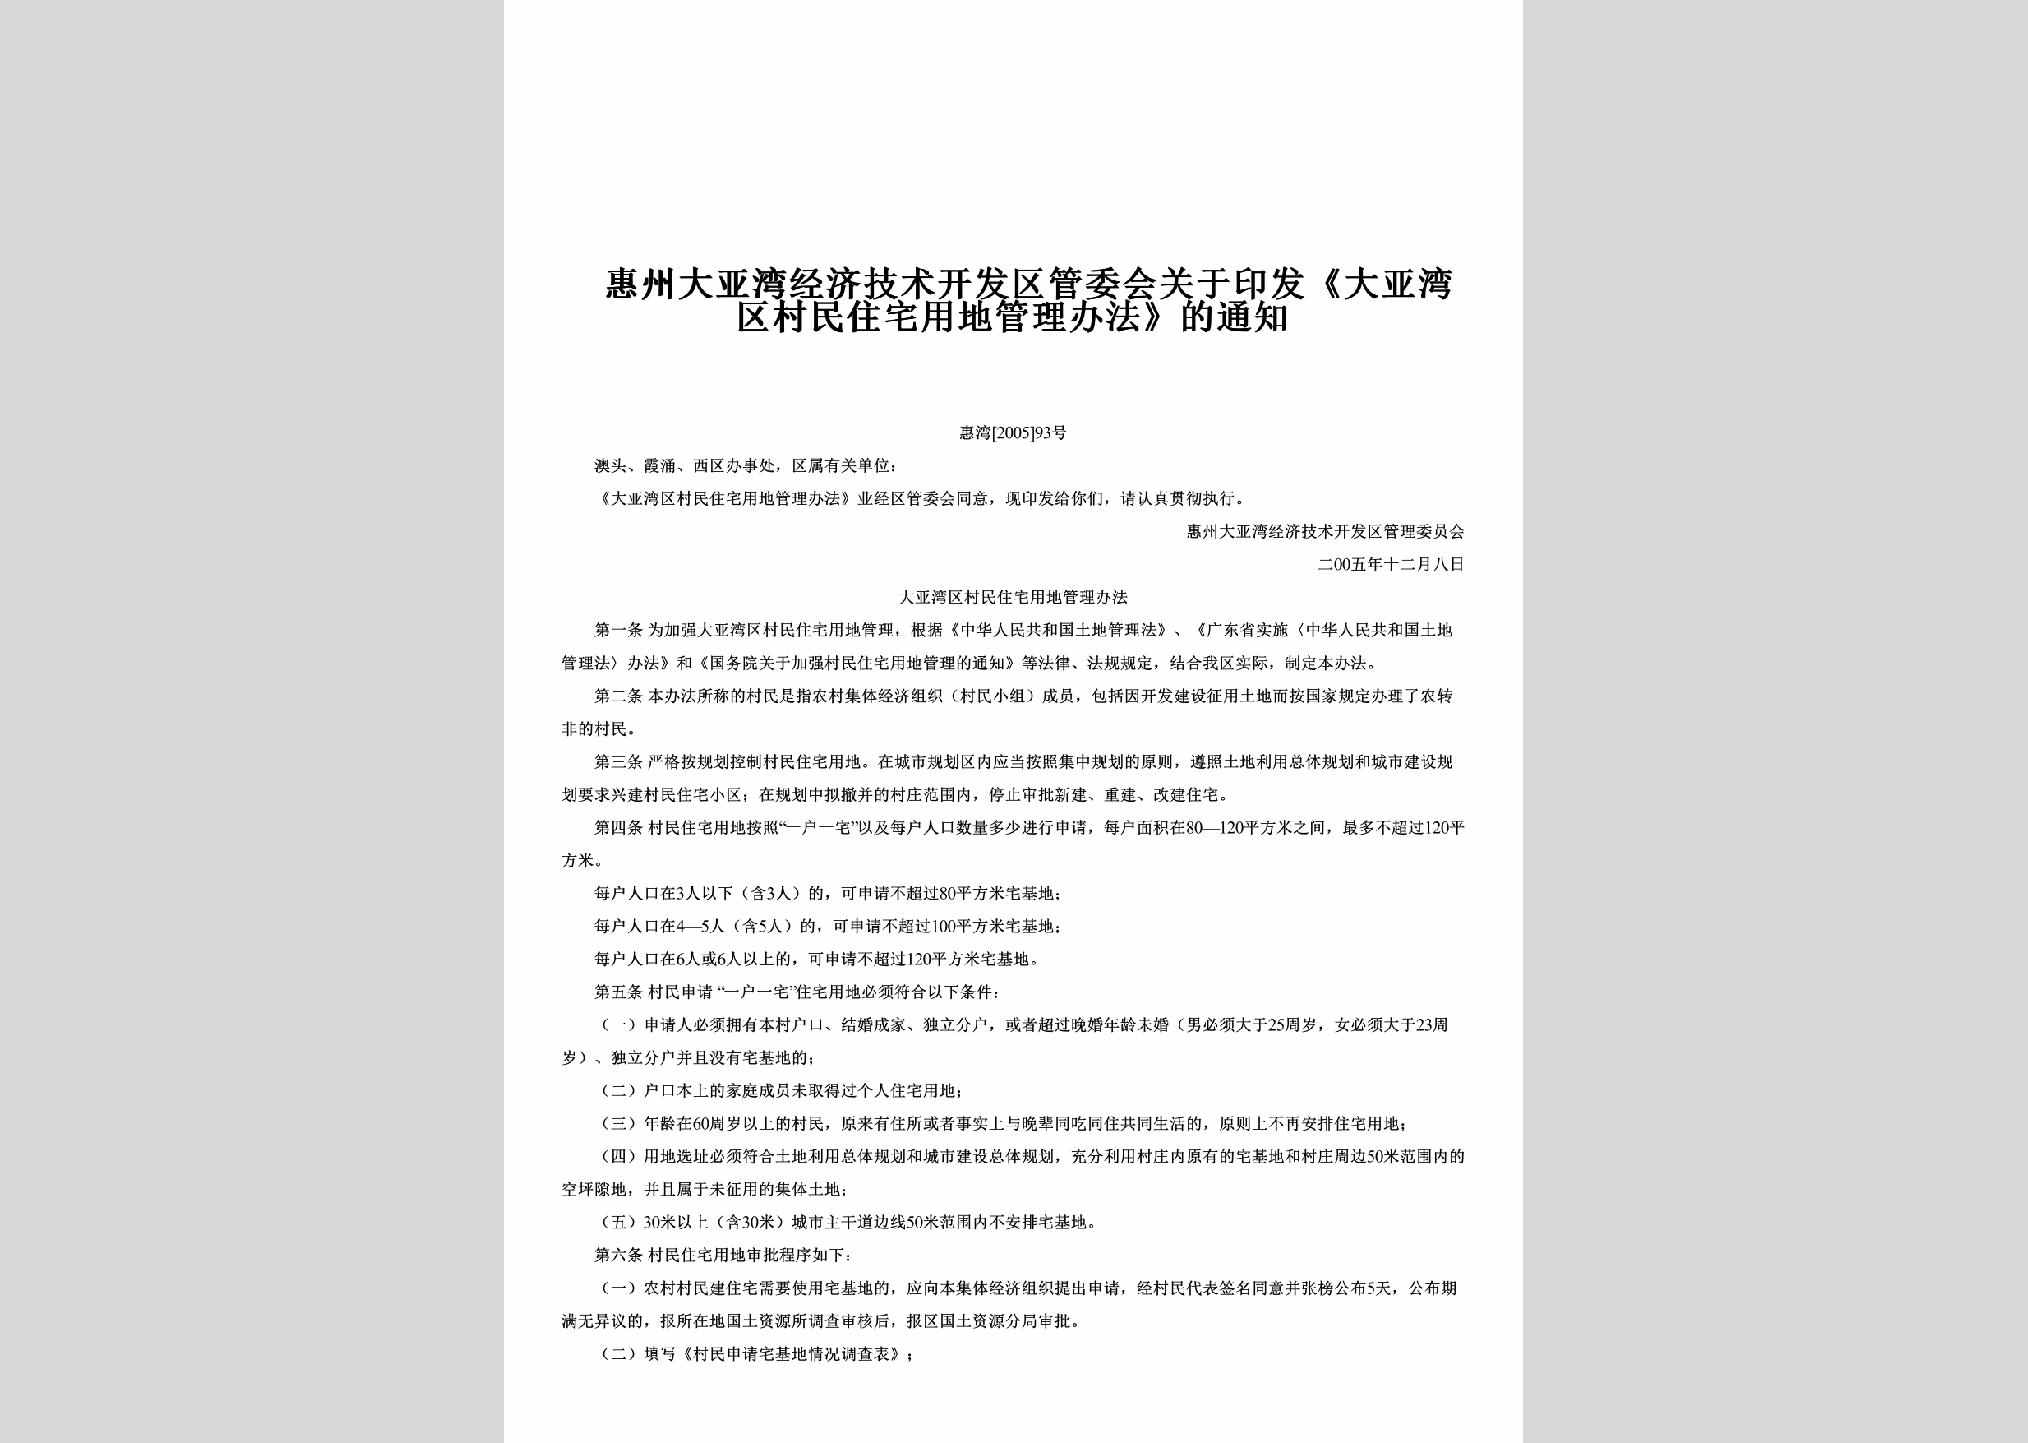 惠湾[2005]93号：关于印发《大亚湾区村民住宅用地管理办法》的通知